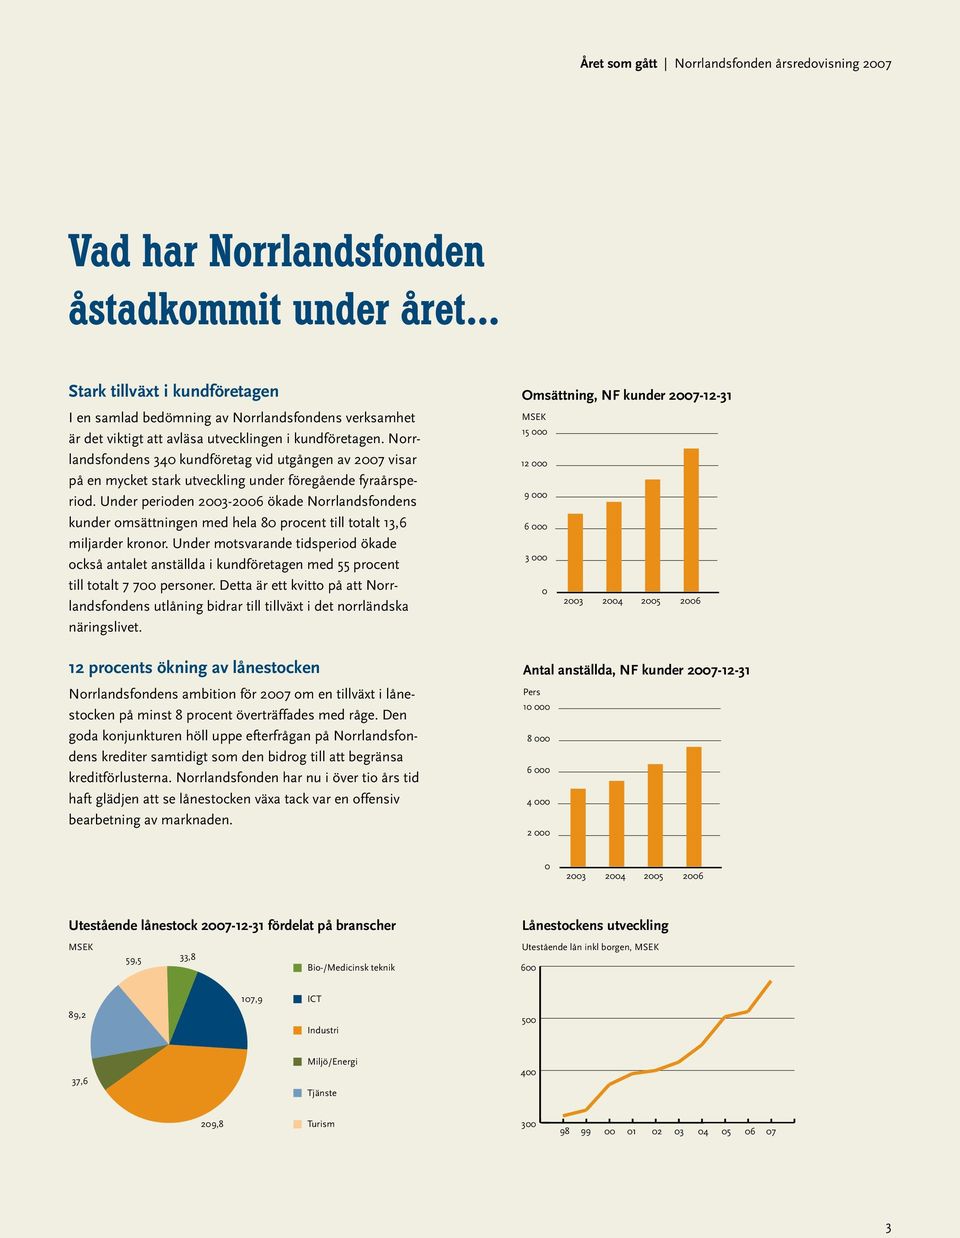 Norrlandsfondens 340 kundföretag vid utgången av 2007 visar på en mycket stark utveckling under föregående fyraårsperiod.